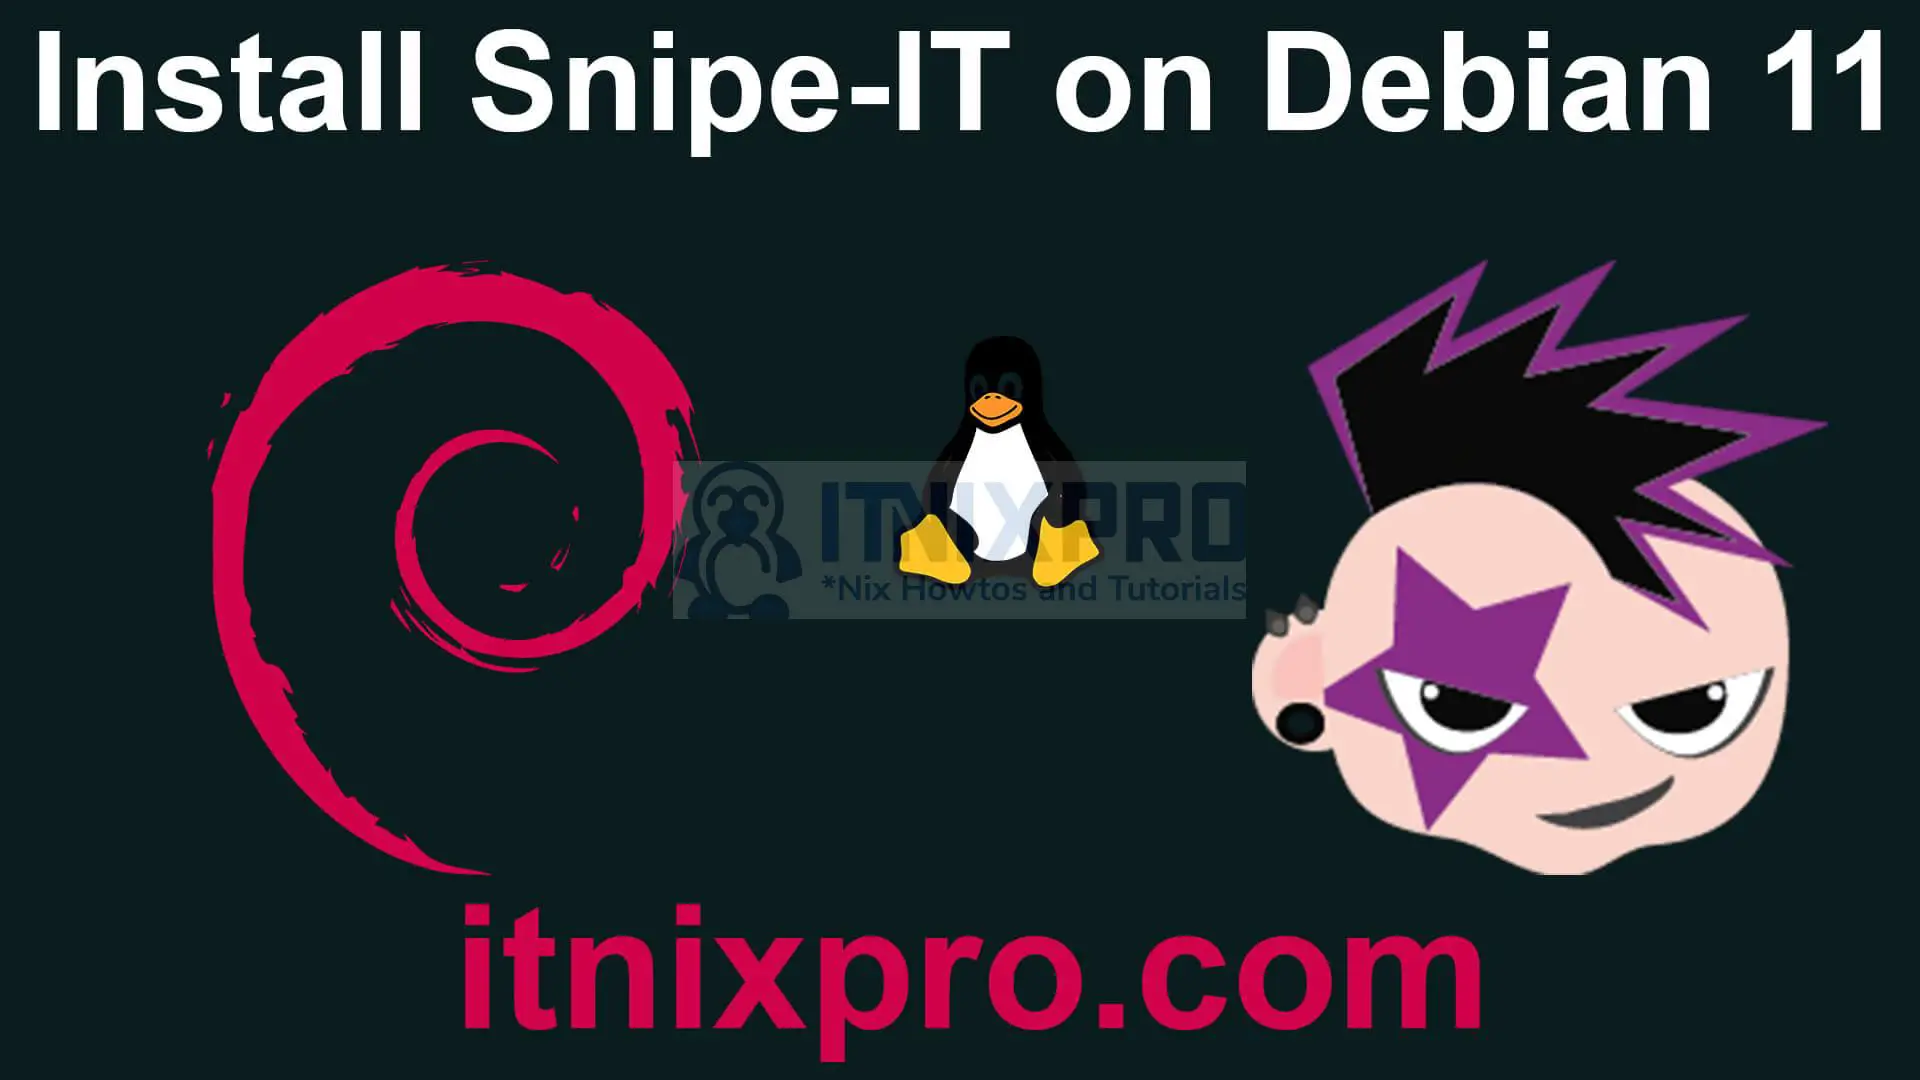 Install Snipe-IT on Debian 11